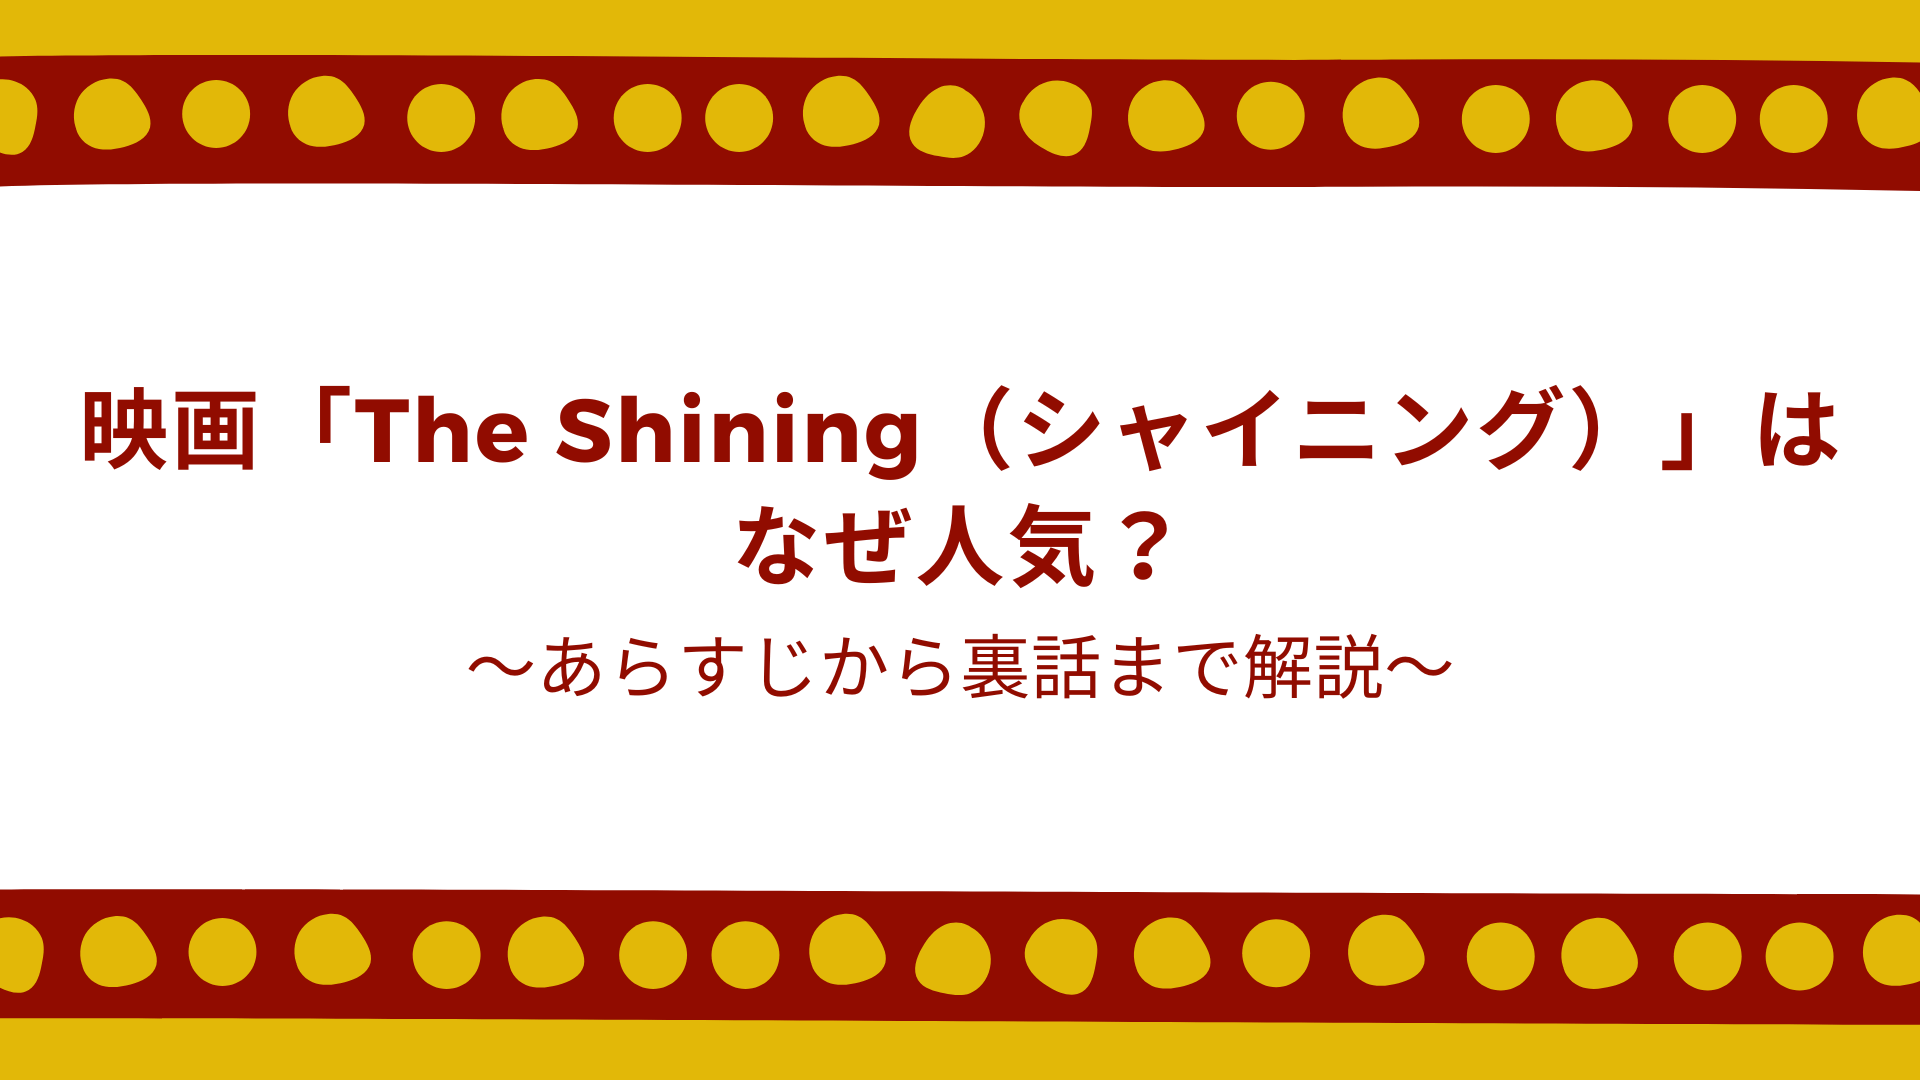 The Shining-popular reason